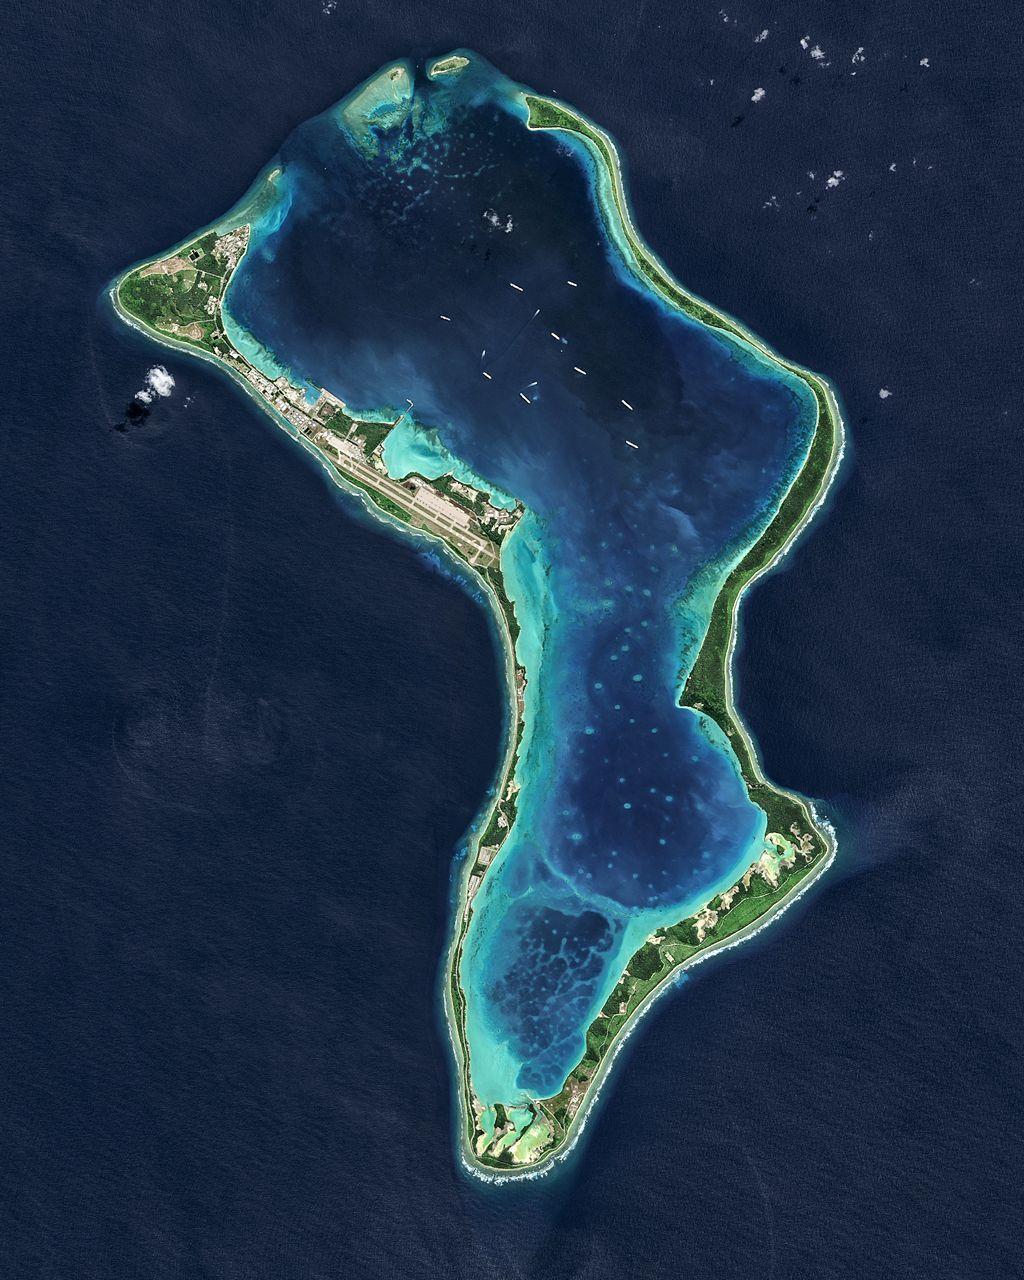 Atolón de Diego García, en el archipiélago de Chagos, al sur de las Maldivas.